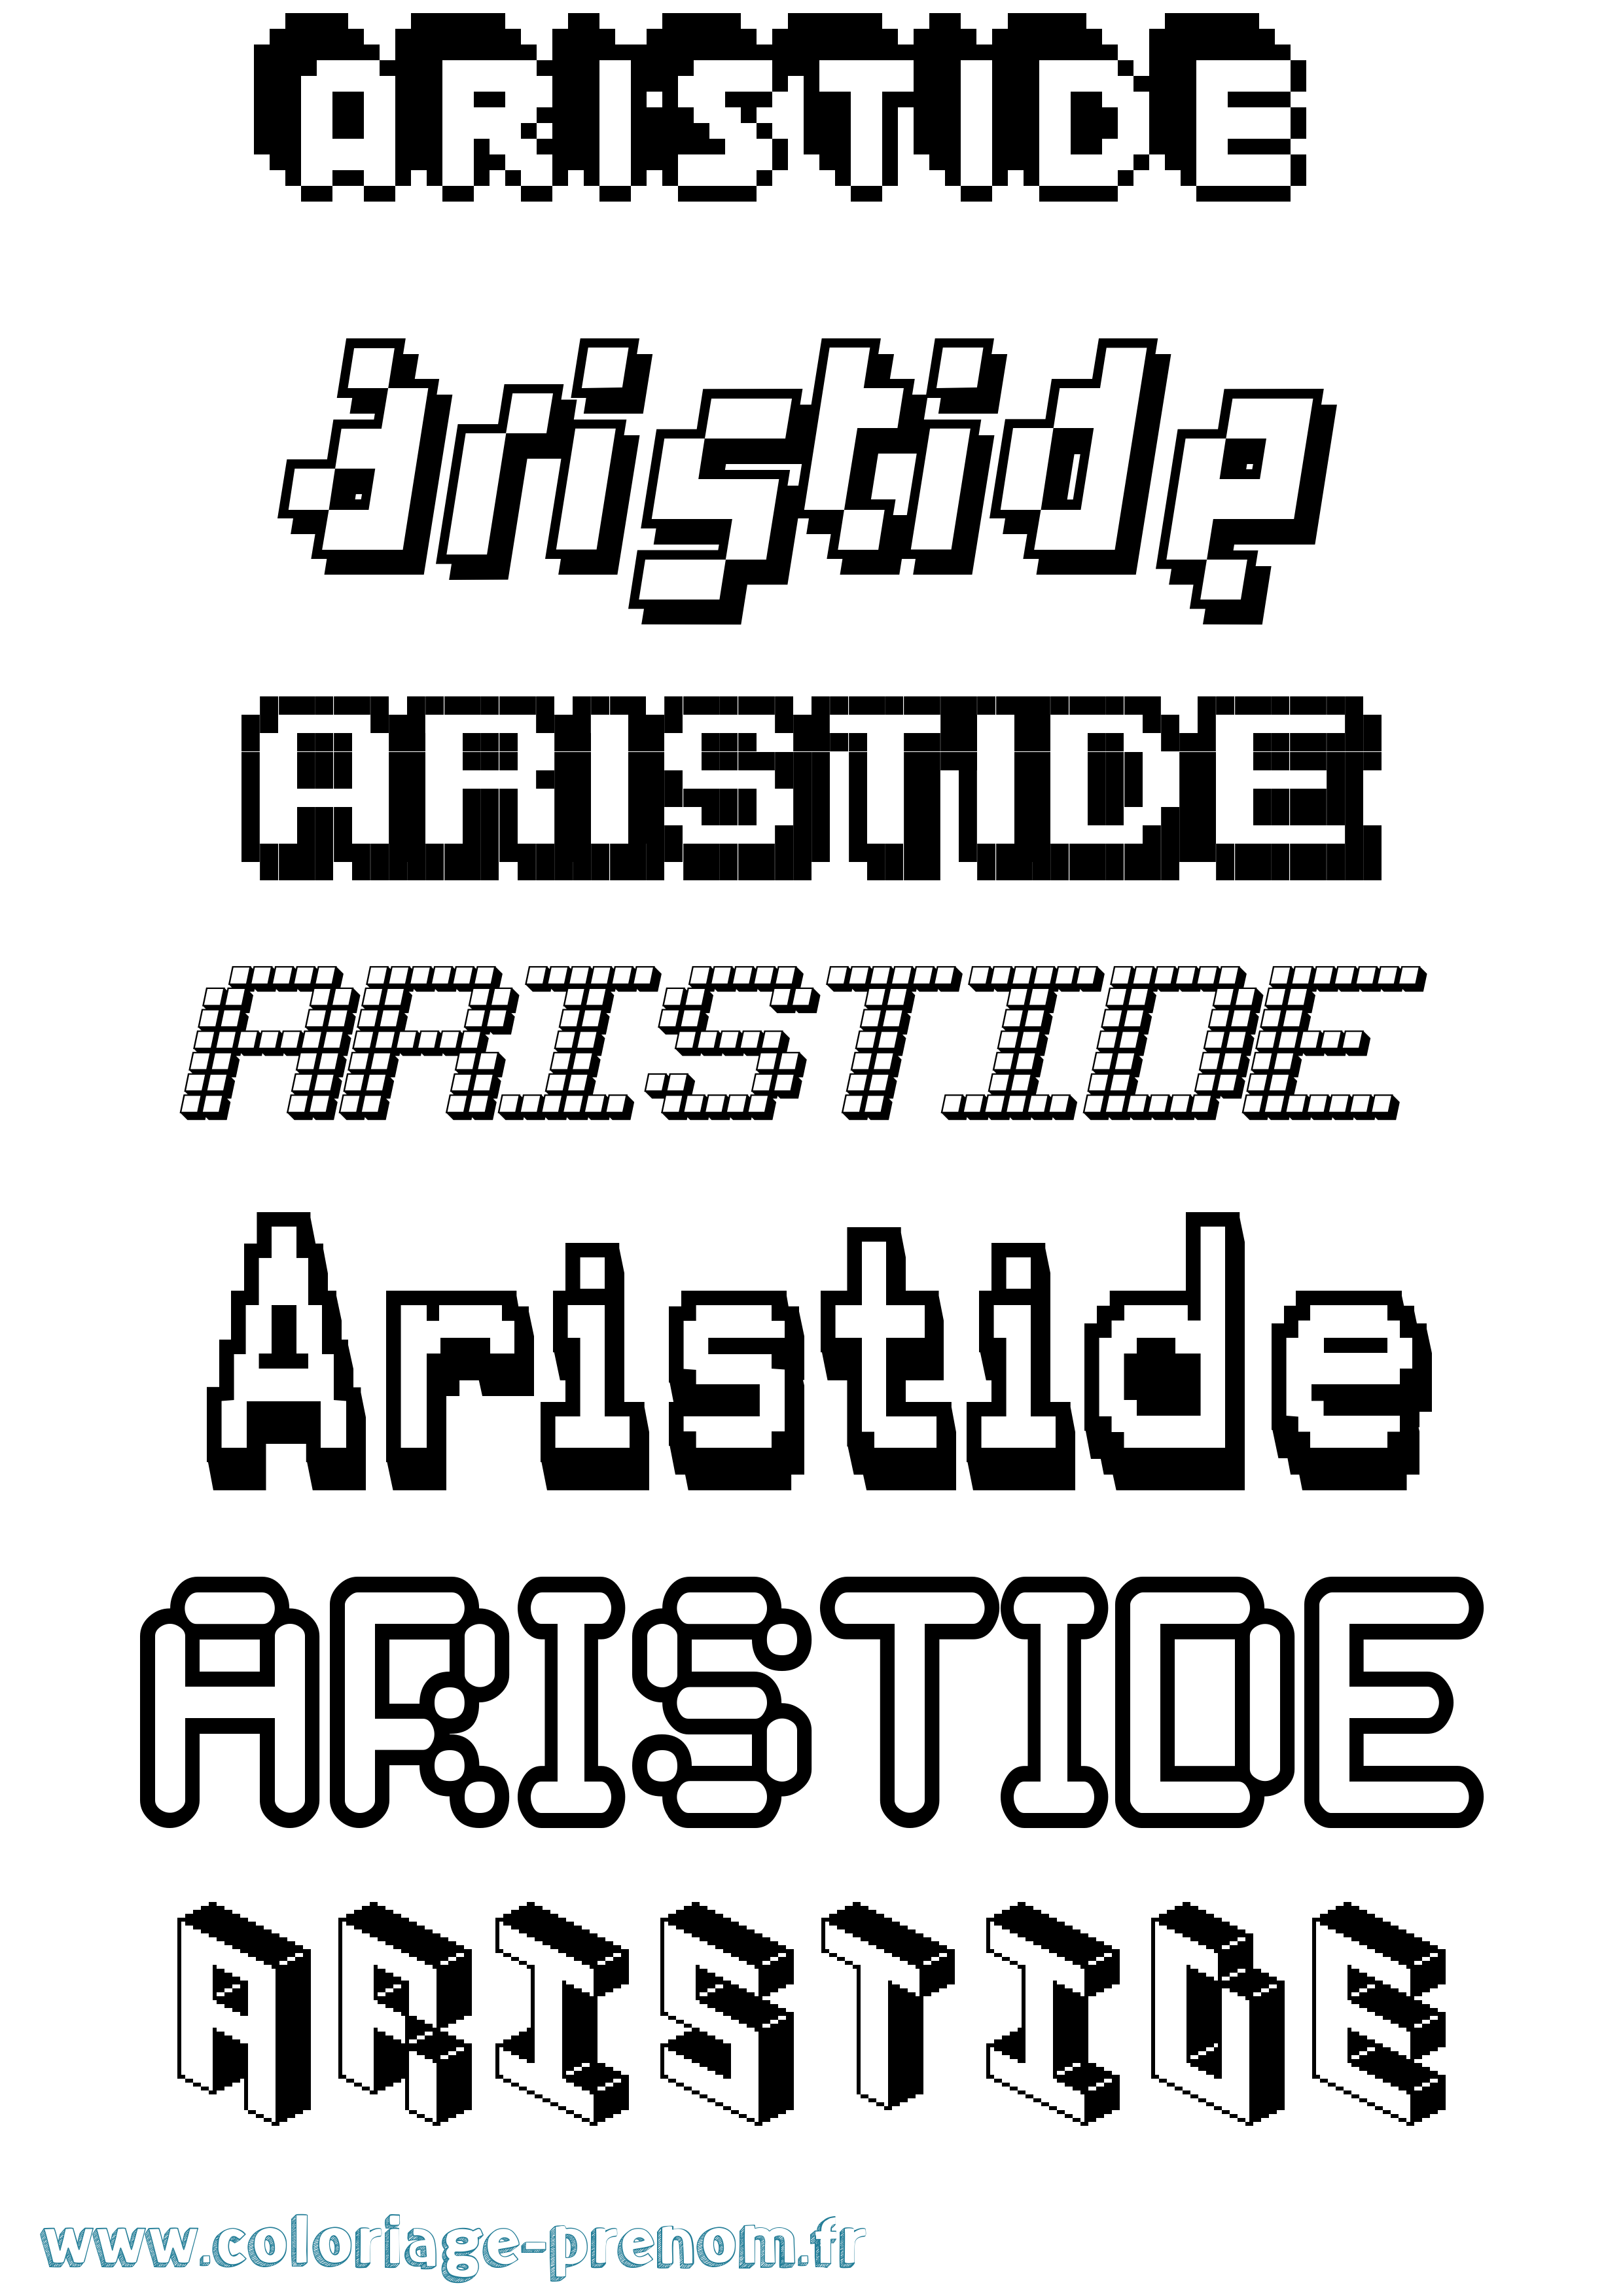 Coloriage prénom Aristide